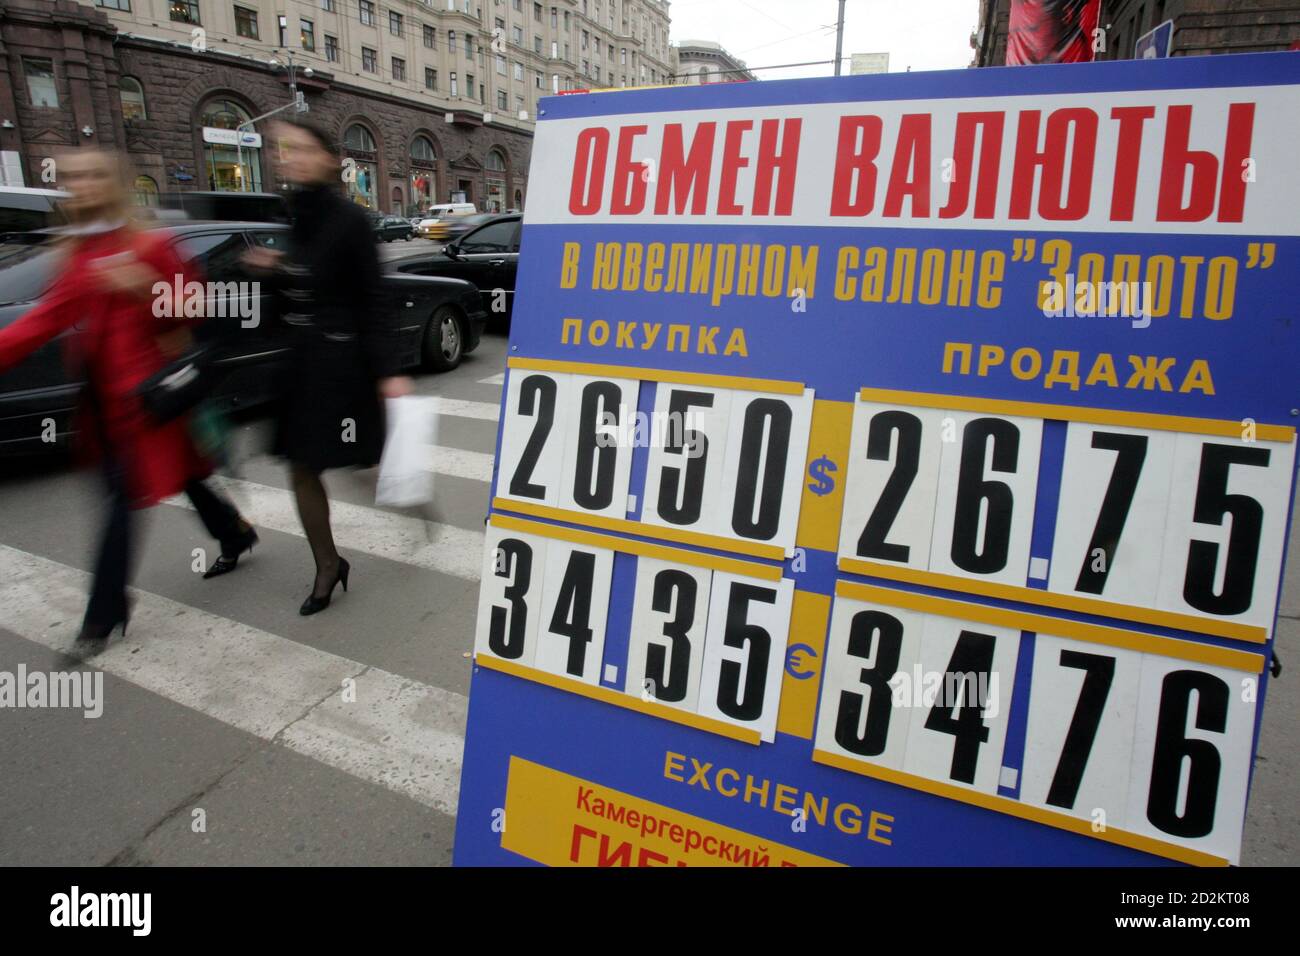 Обмен валюты в москве москва сити евро обмен валют в уфе